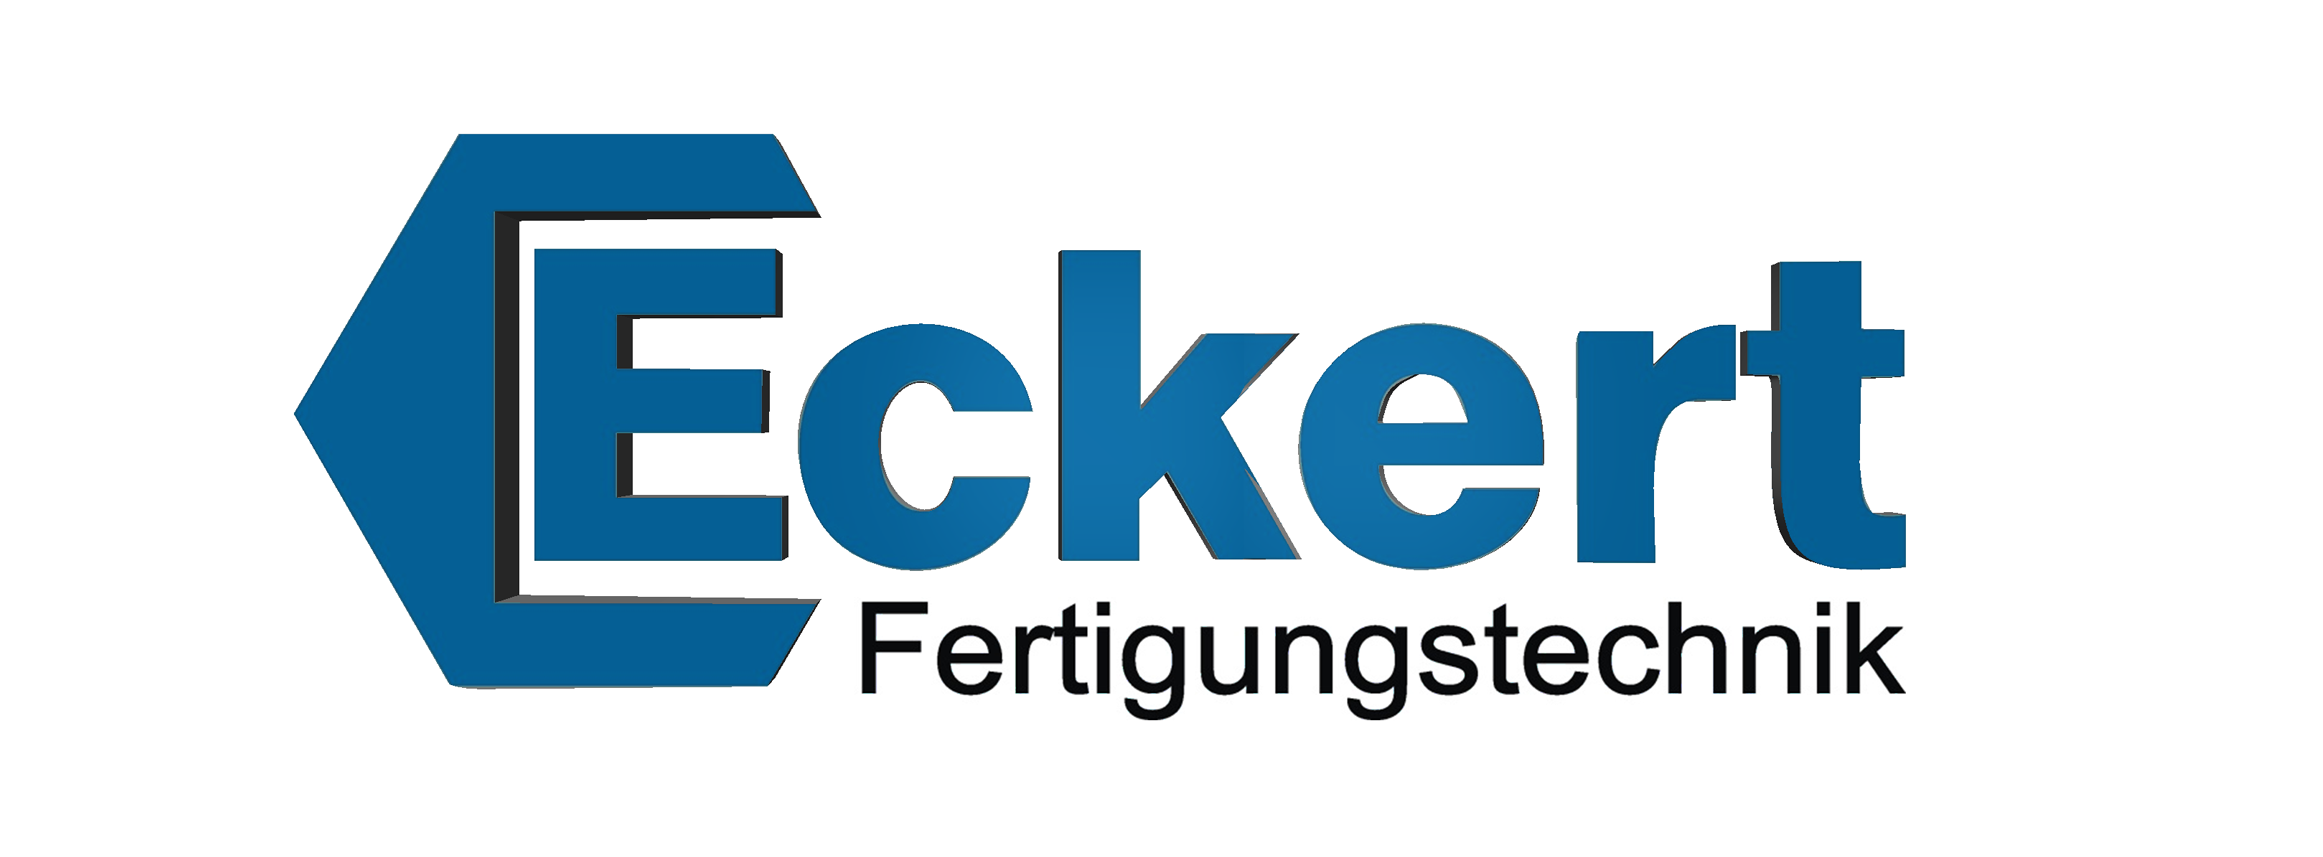 Eckert Fertigungstechnik Logo